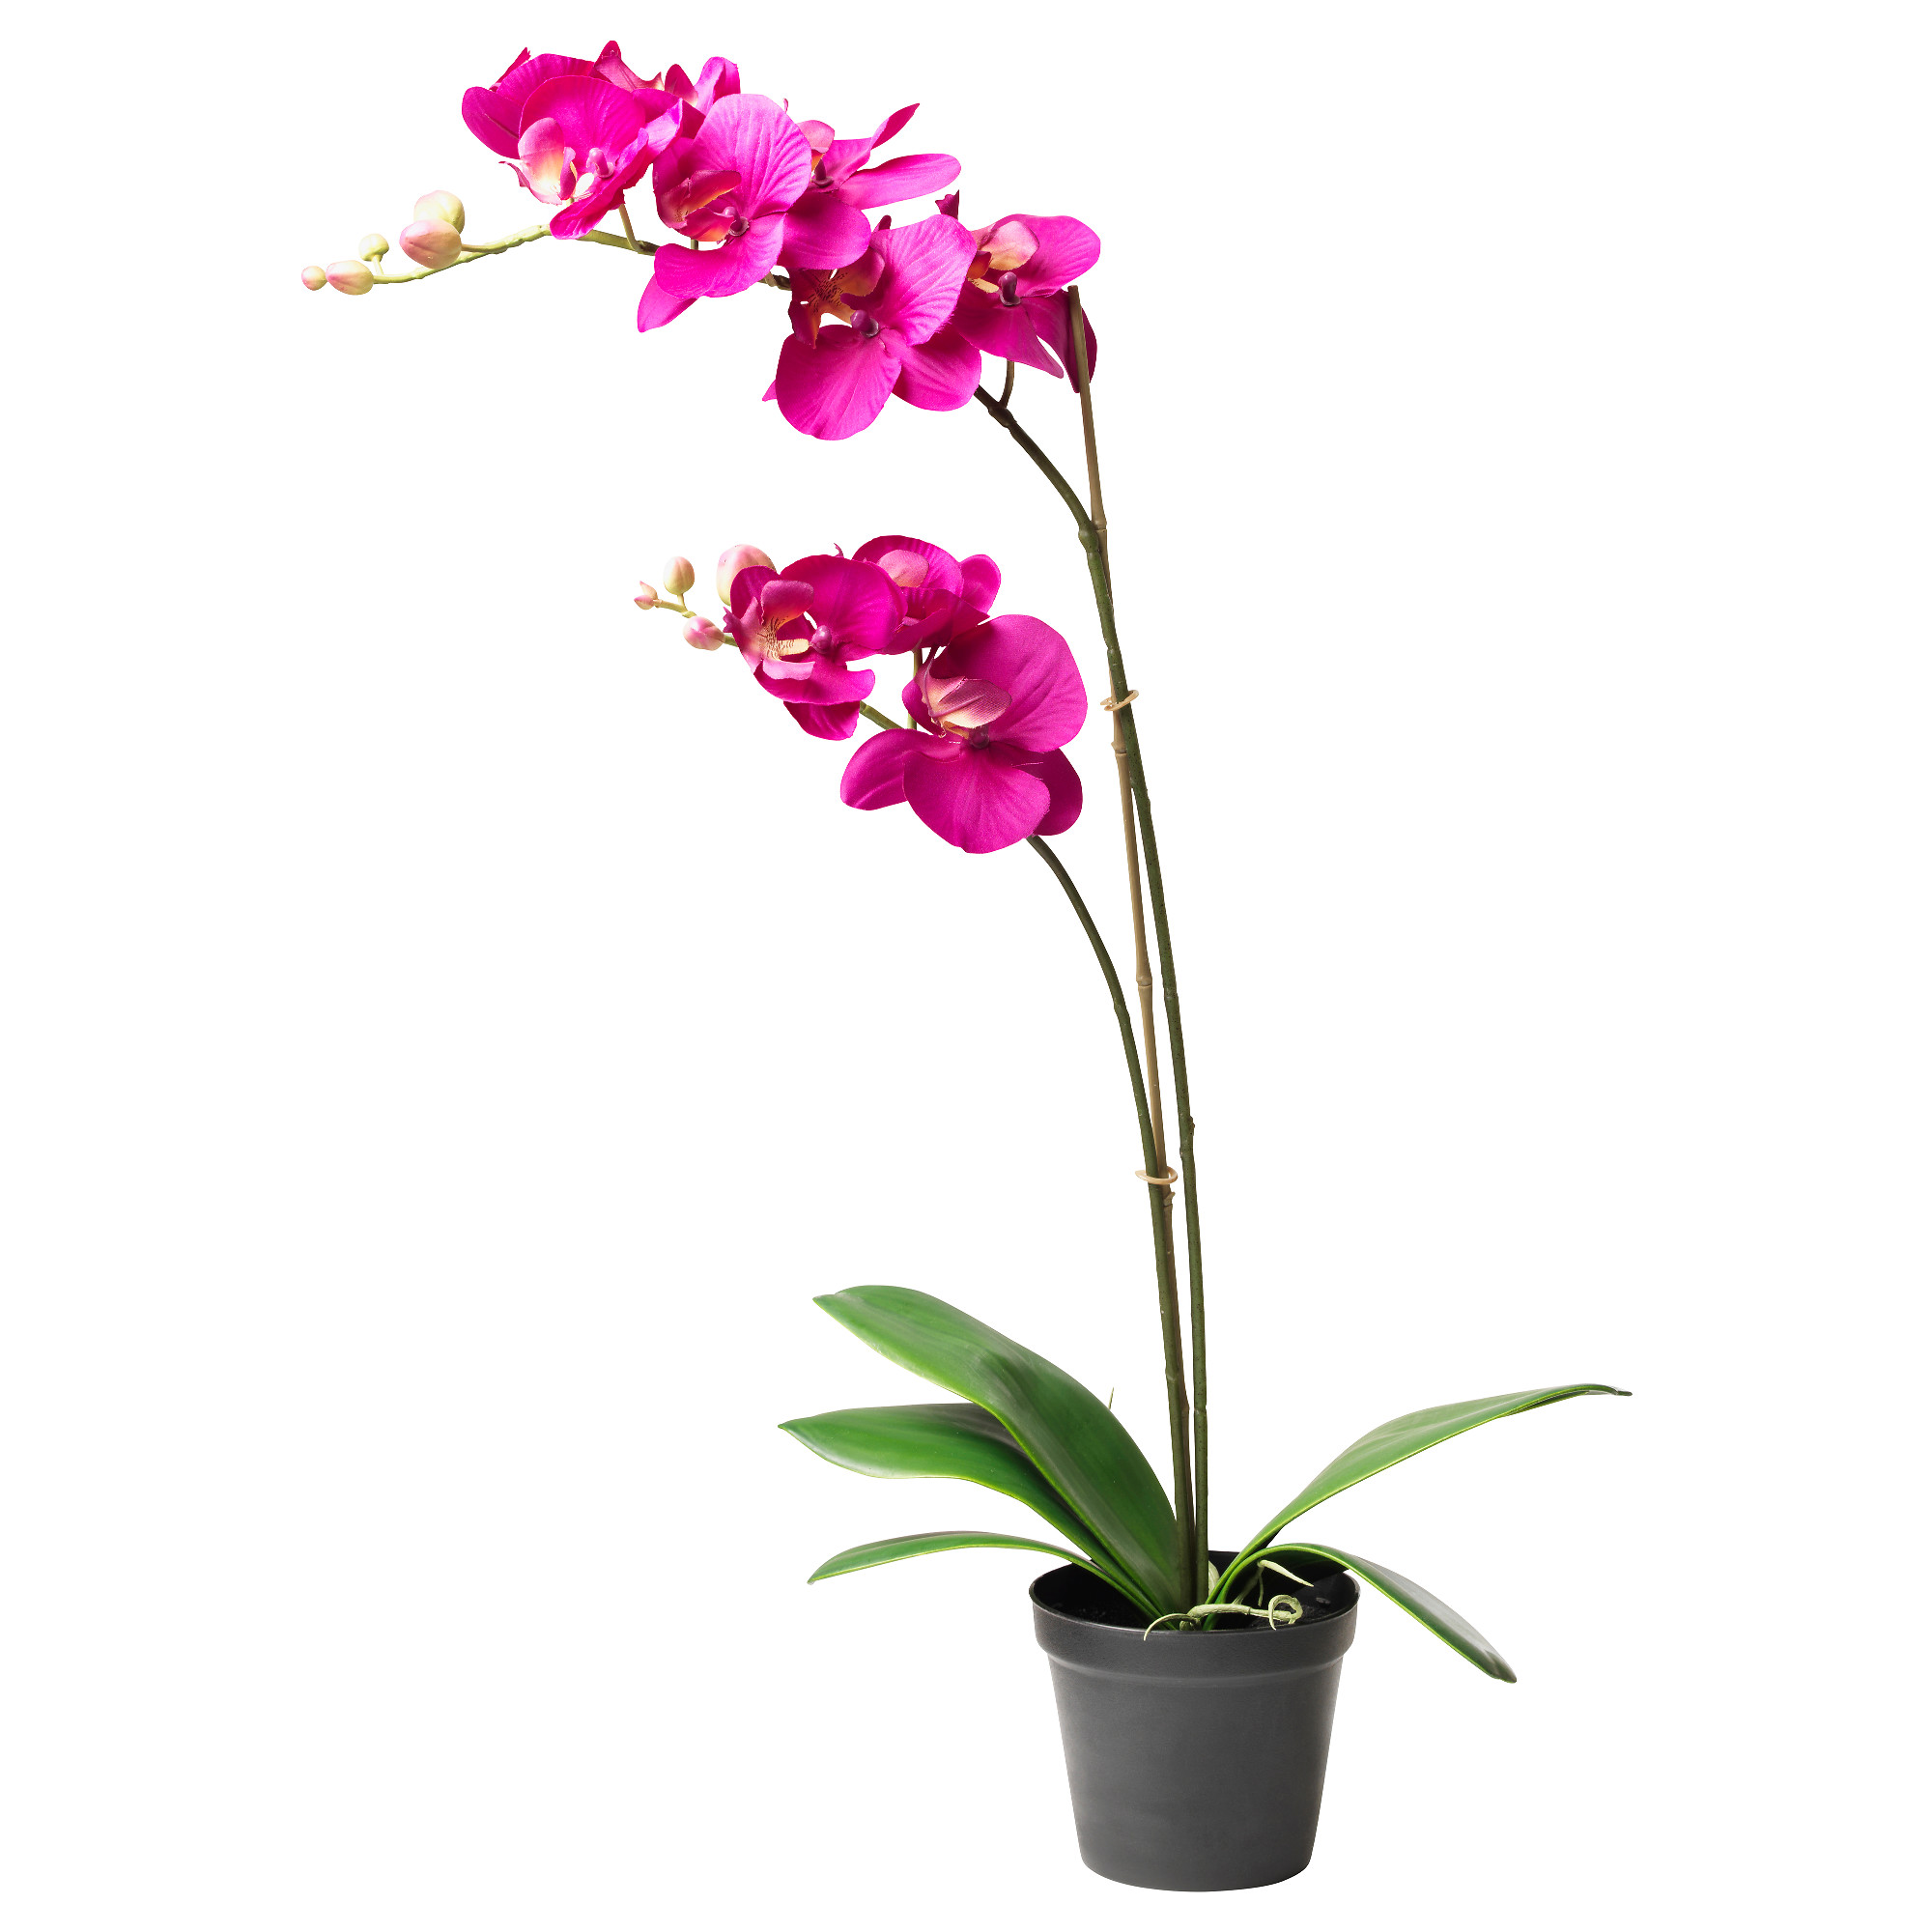 Купить цветы орхидеи в горшке. Орхидея фаленопсис икеа. Фаленопсис в горшке. Цветок в горшке фаленопсис.